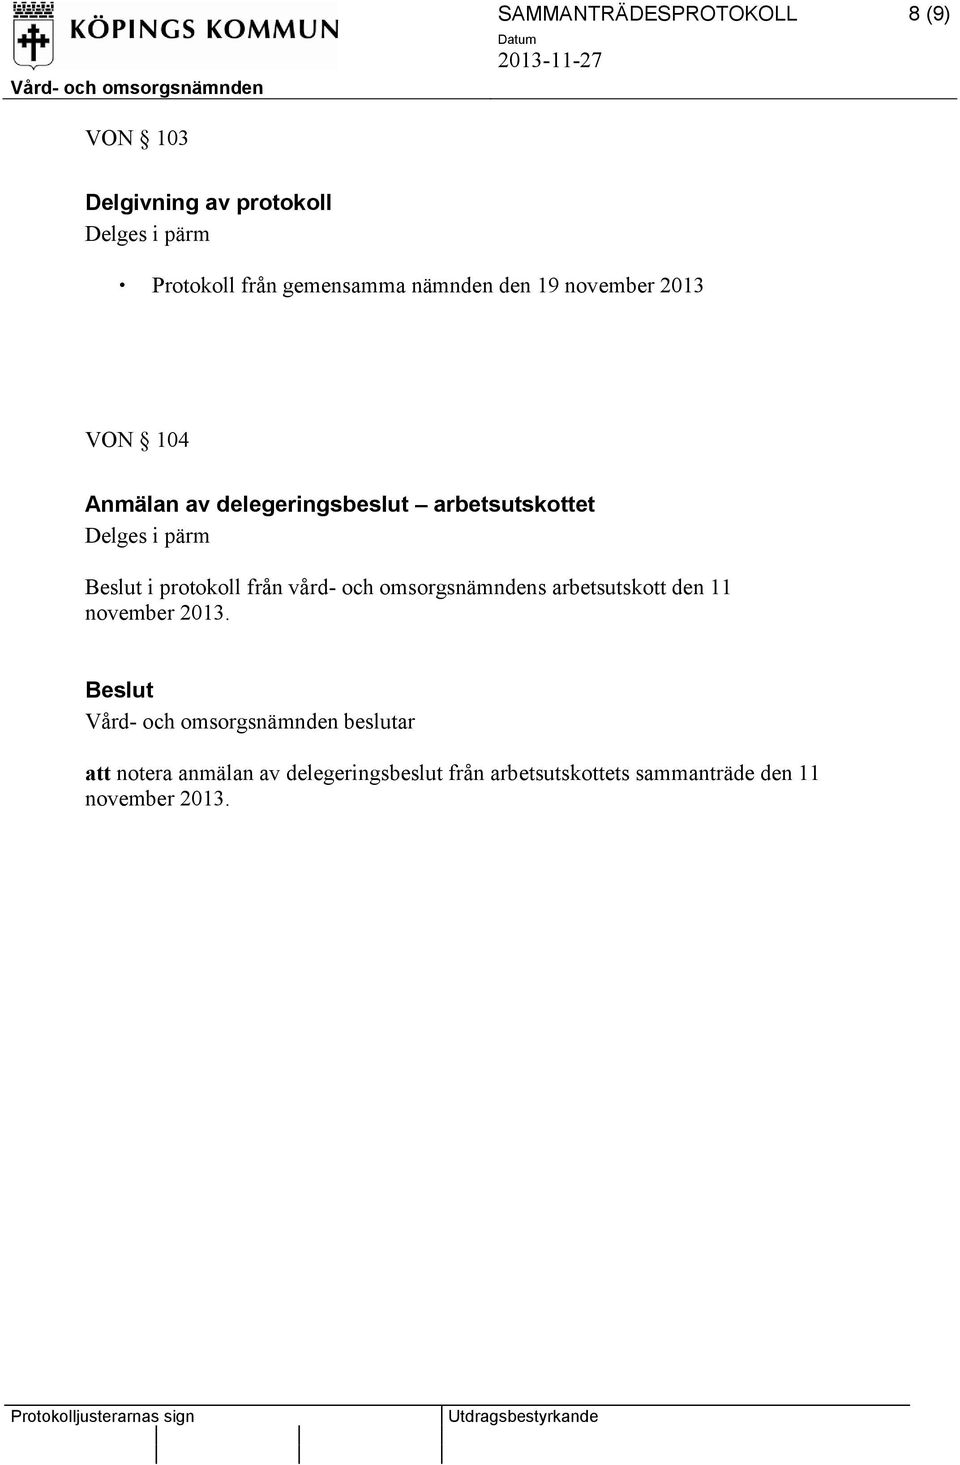 protokoll från vård- och omsorgsnämndens arbetsutskott den 11 november 2013.